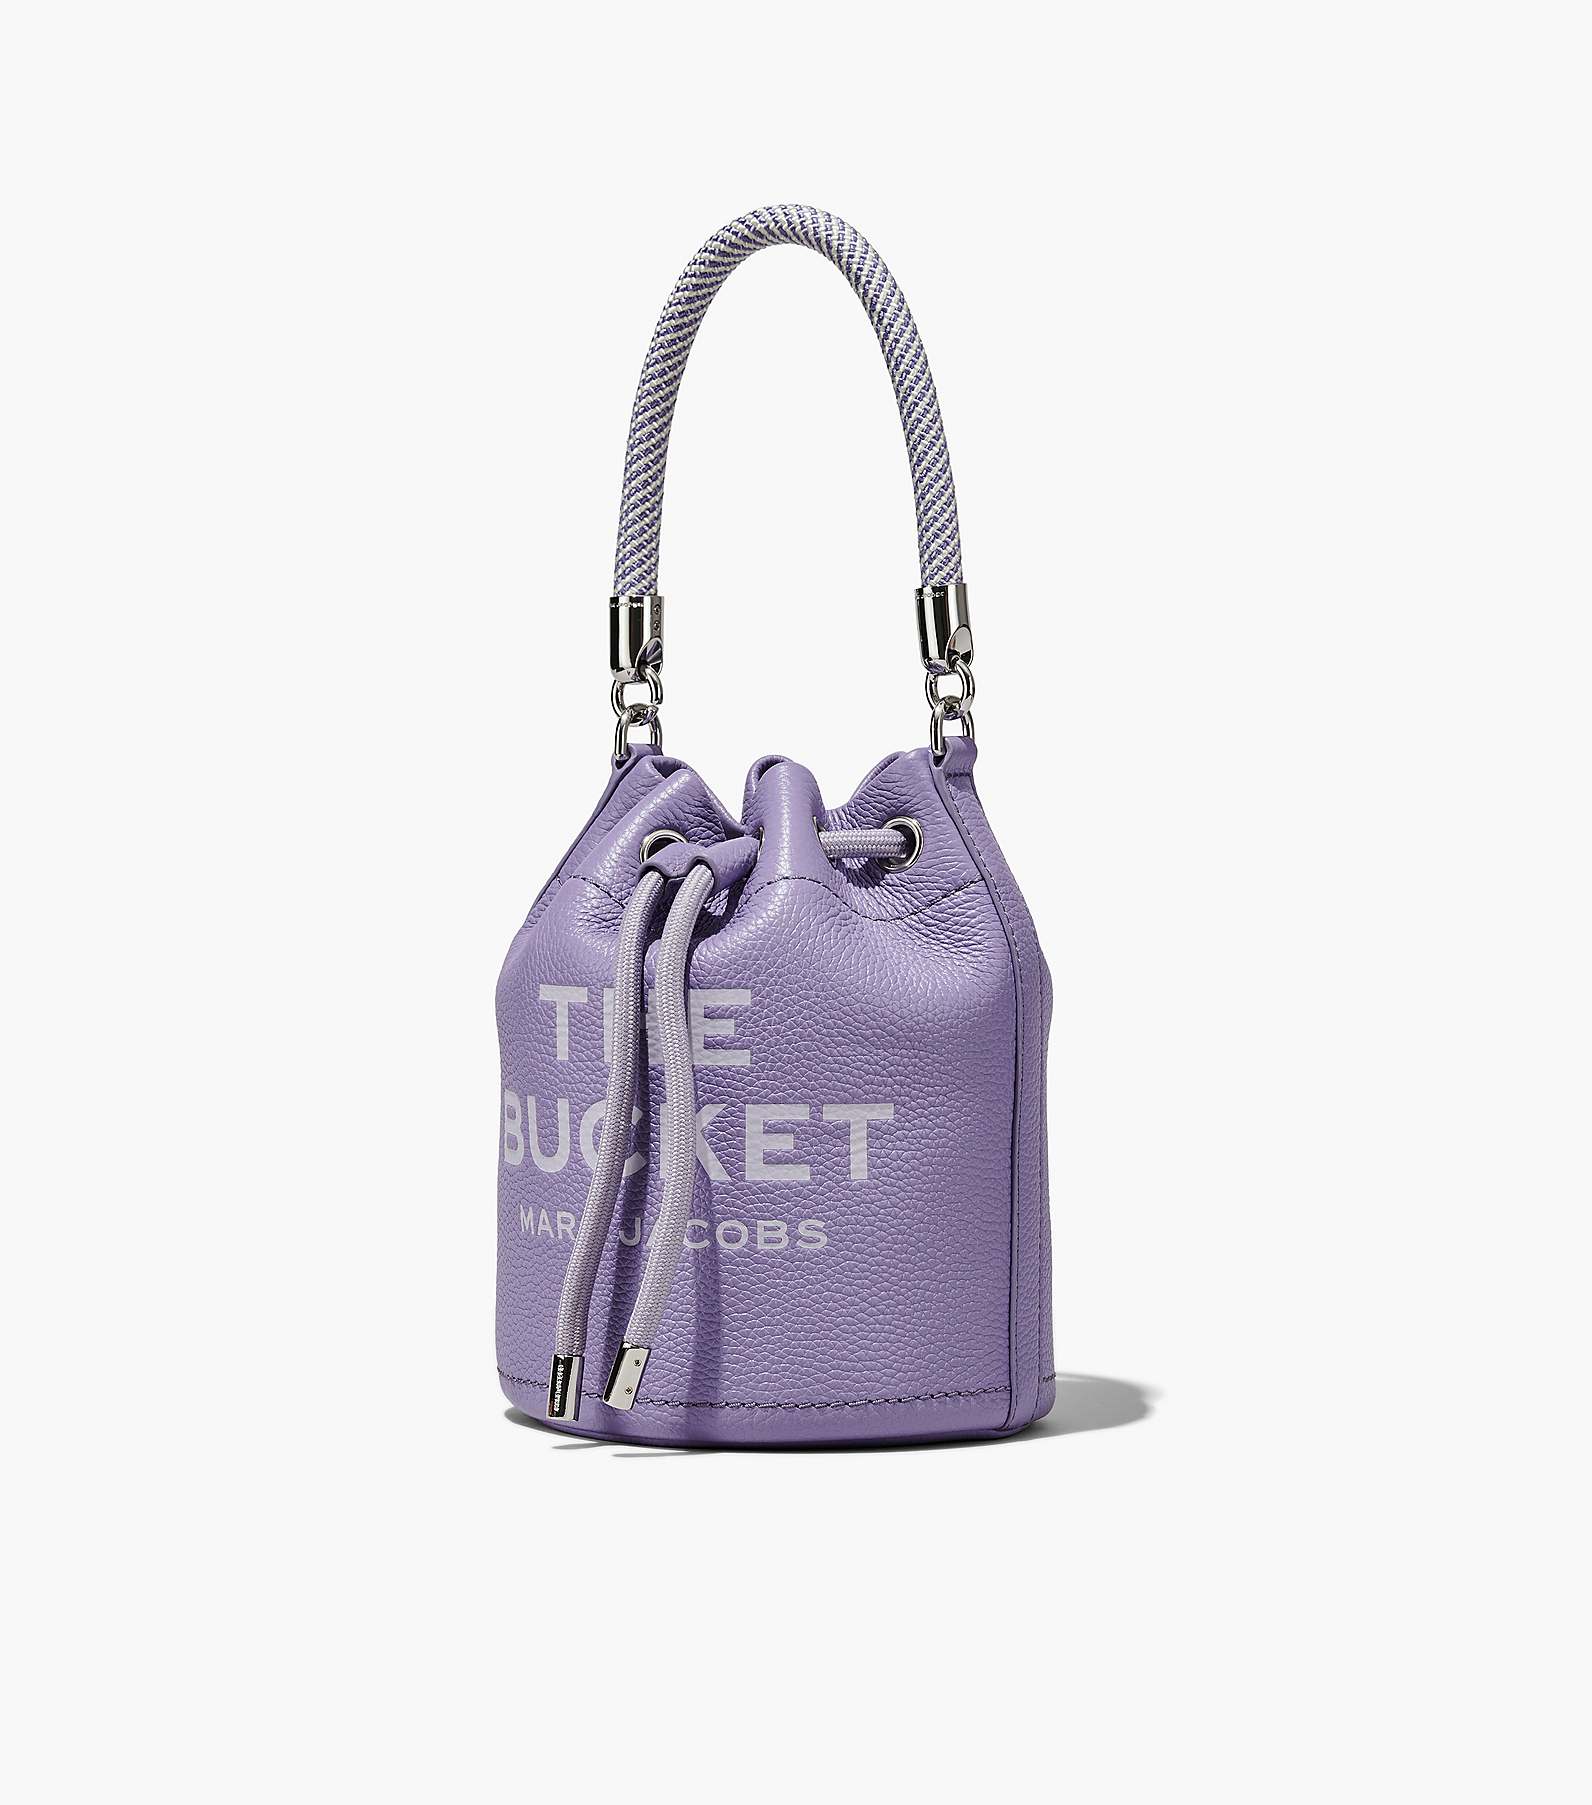 The Leather Bucket Bag(The Bucket)